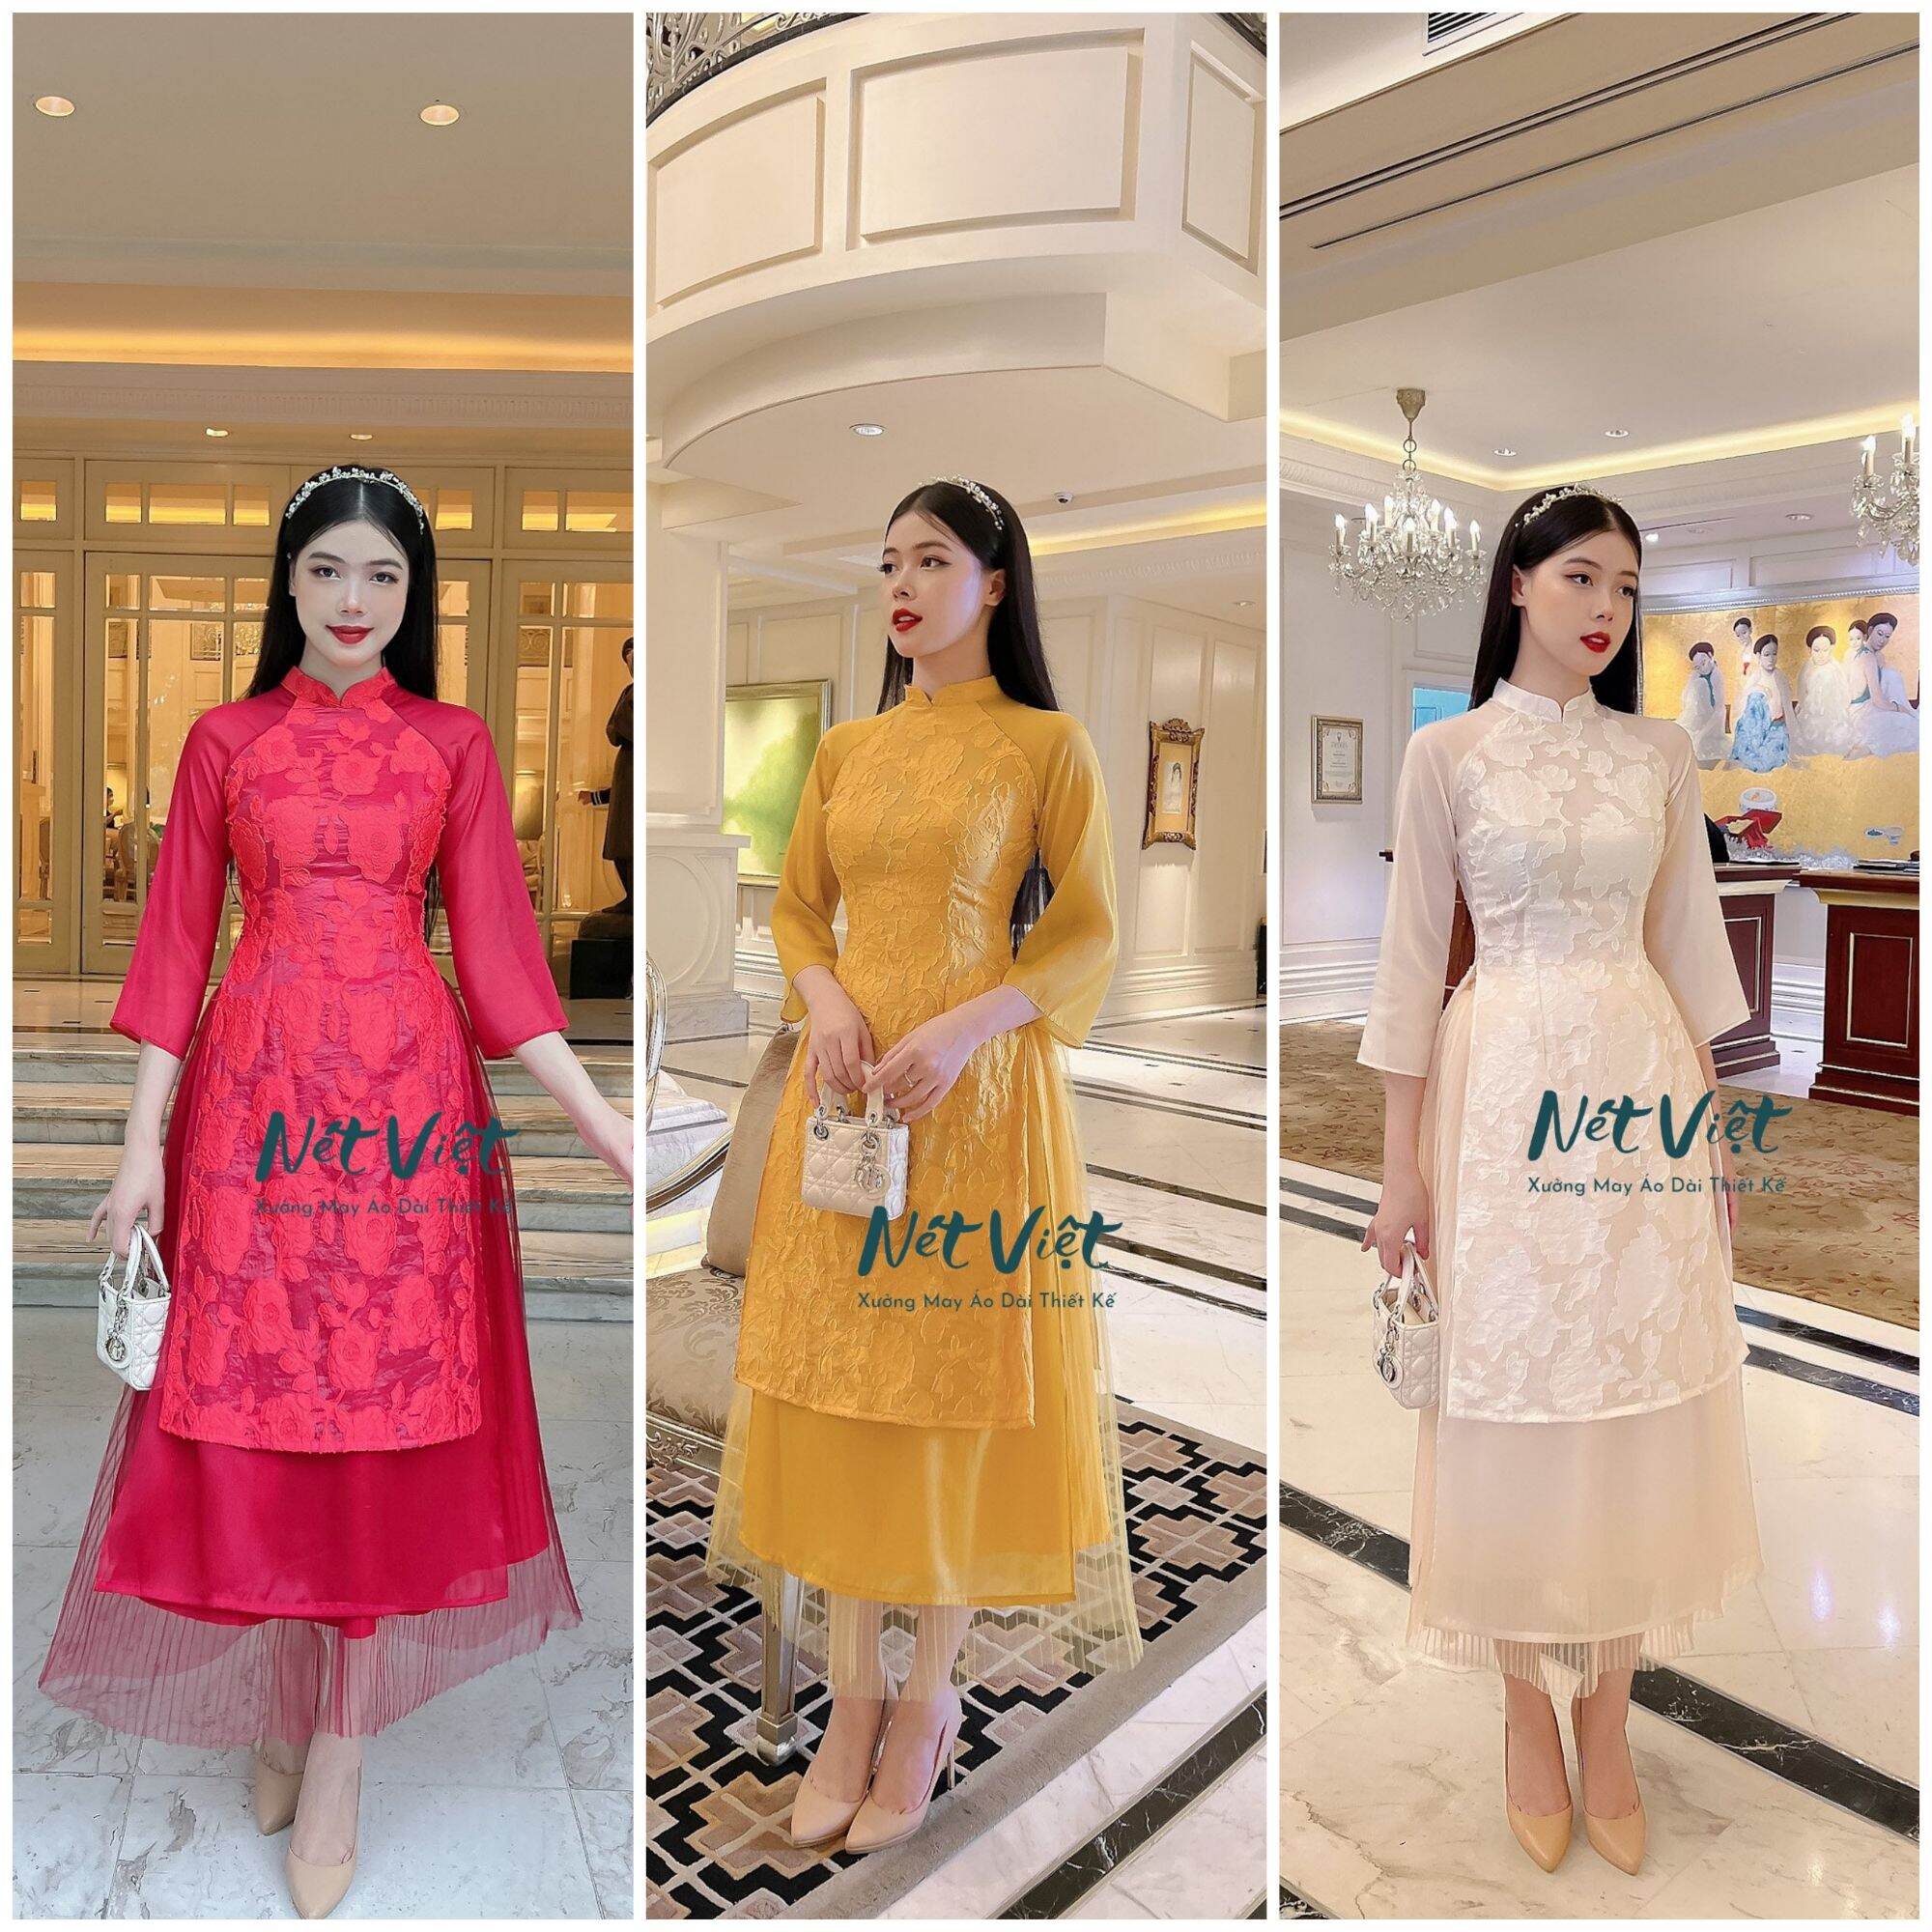 Áo Dài Cách Tân Áo Kèm Chân Váy Chất Liệu Gấm Hoa Hồng Mềm Mịn Kiểu Dáng 4  Tà Chân Váy 2 Lớp 3 Màu Đỏ Vàng Kem Diện Tết Siêu Xinh